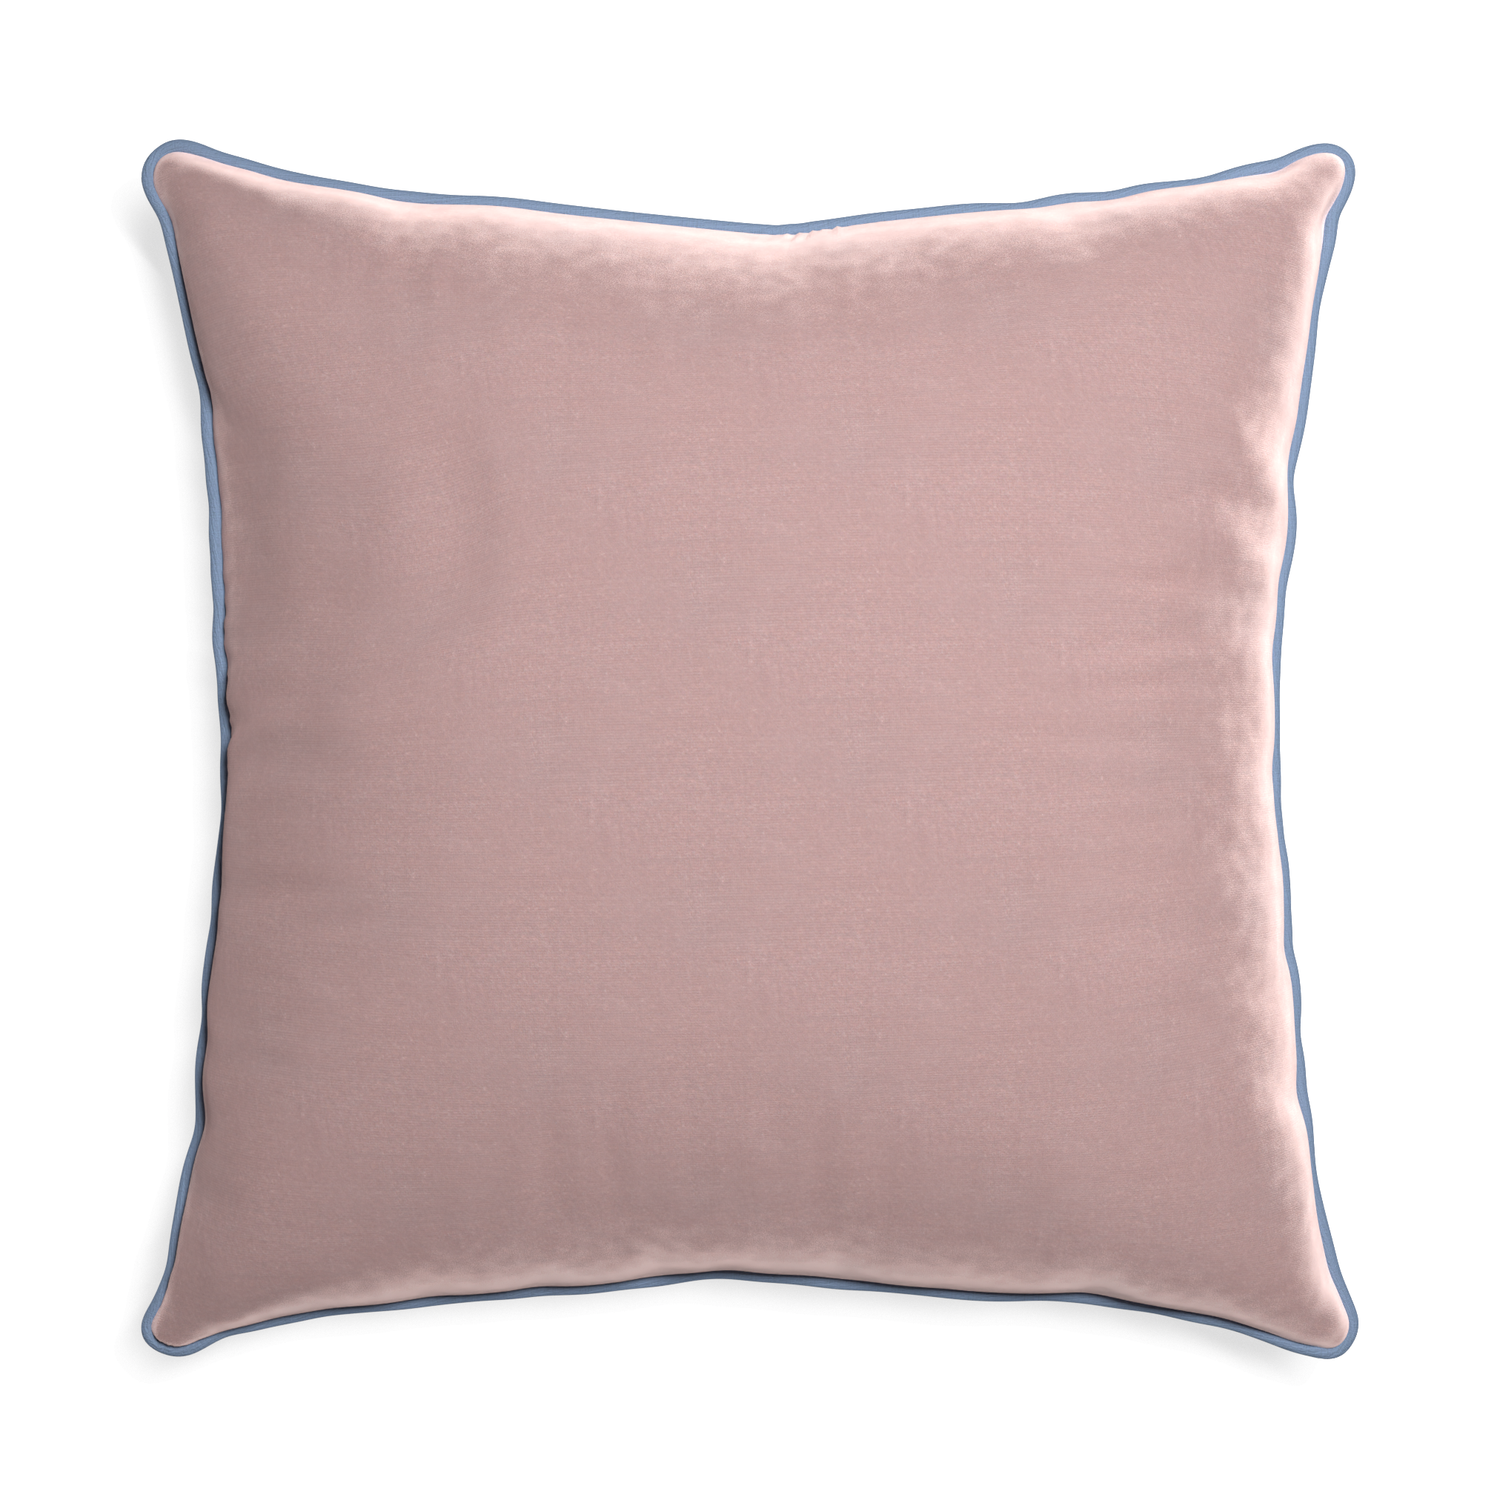 Euro-sham mauve velvet custom pillow with sky piping on white background